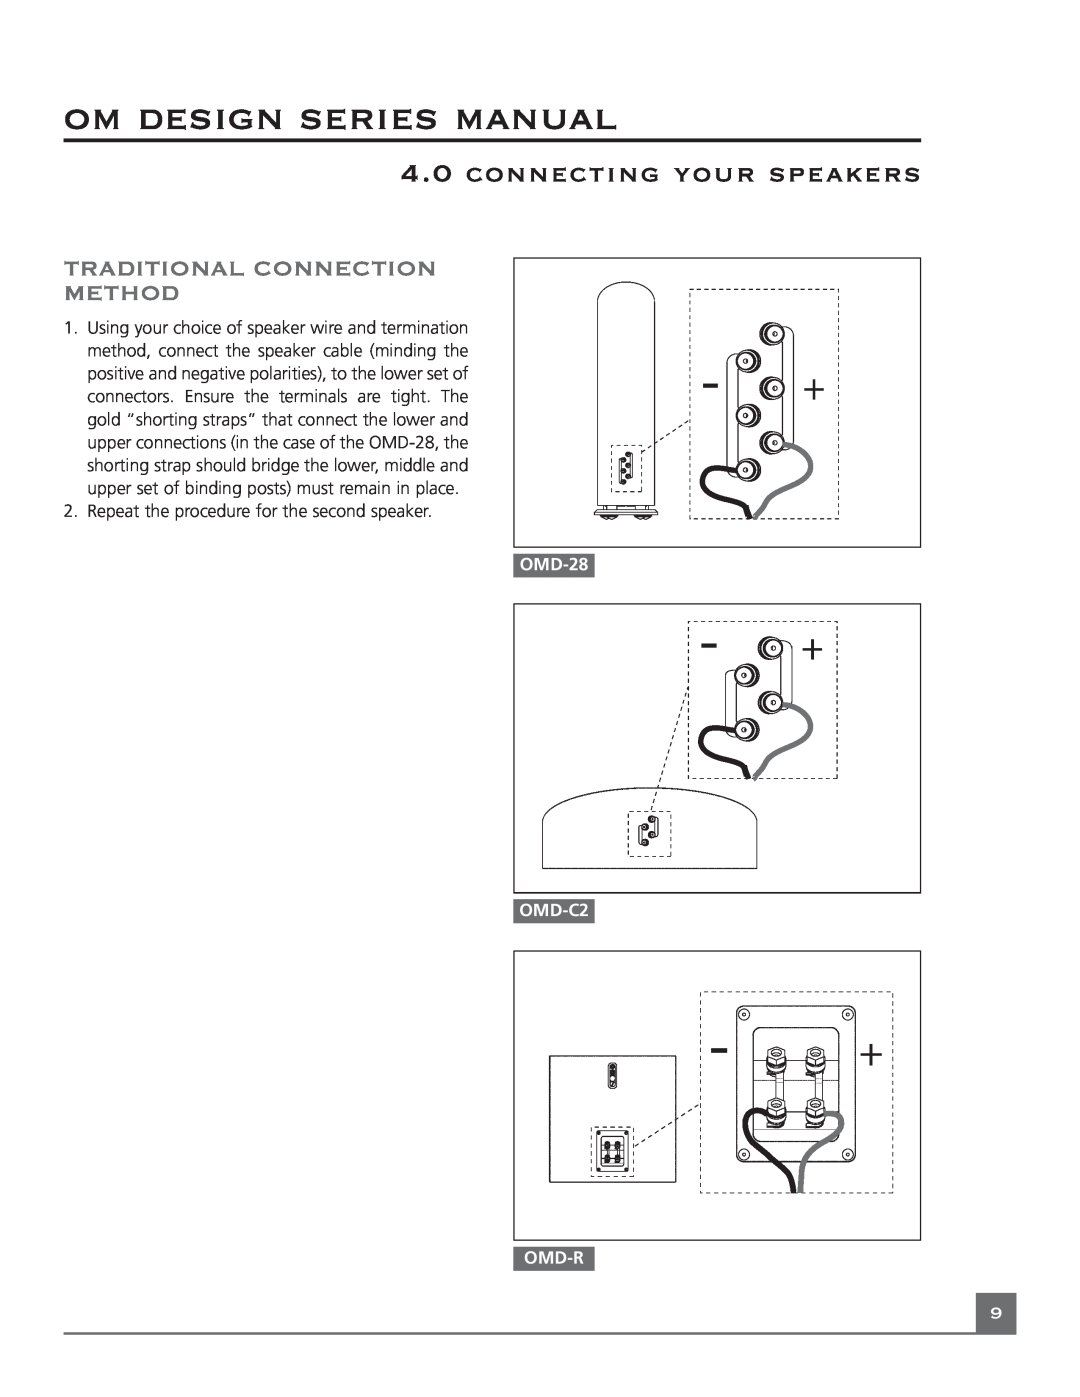 Mirage Loudspeakers OM DESIGN SERIES Traditional Connection Method, om design series manual, connecting your speakers 